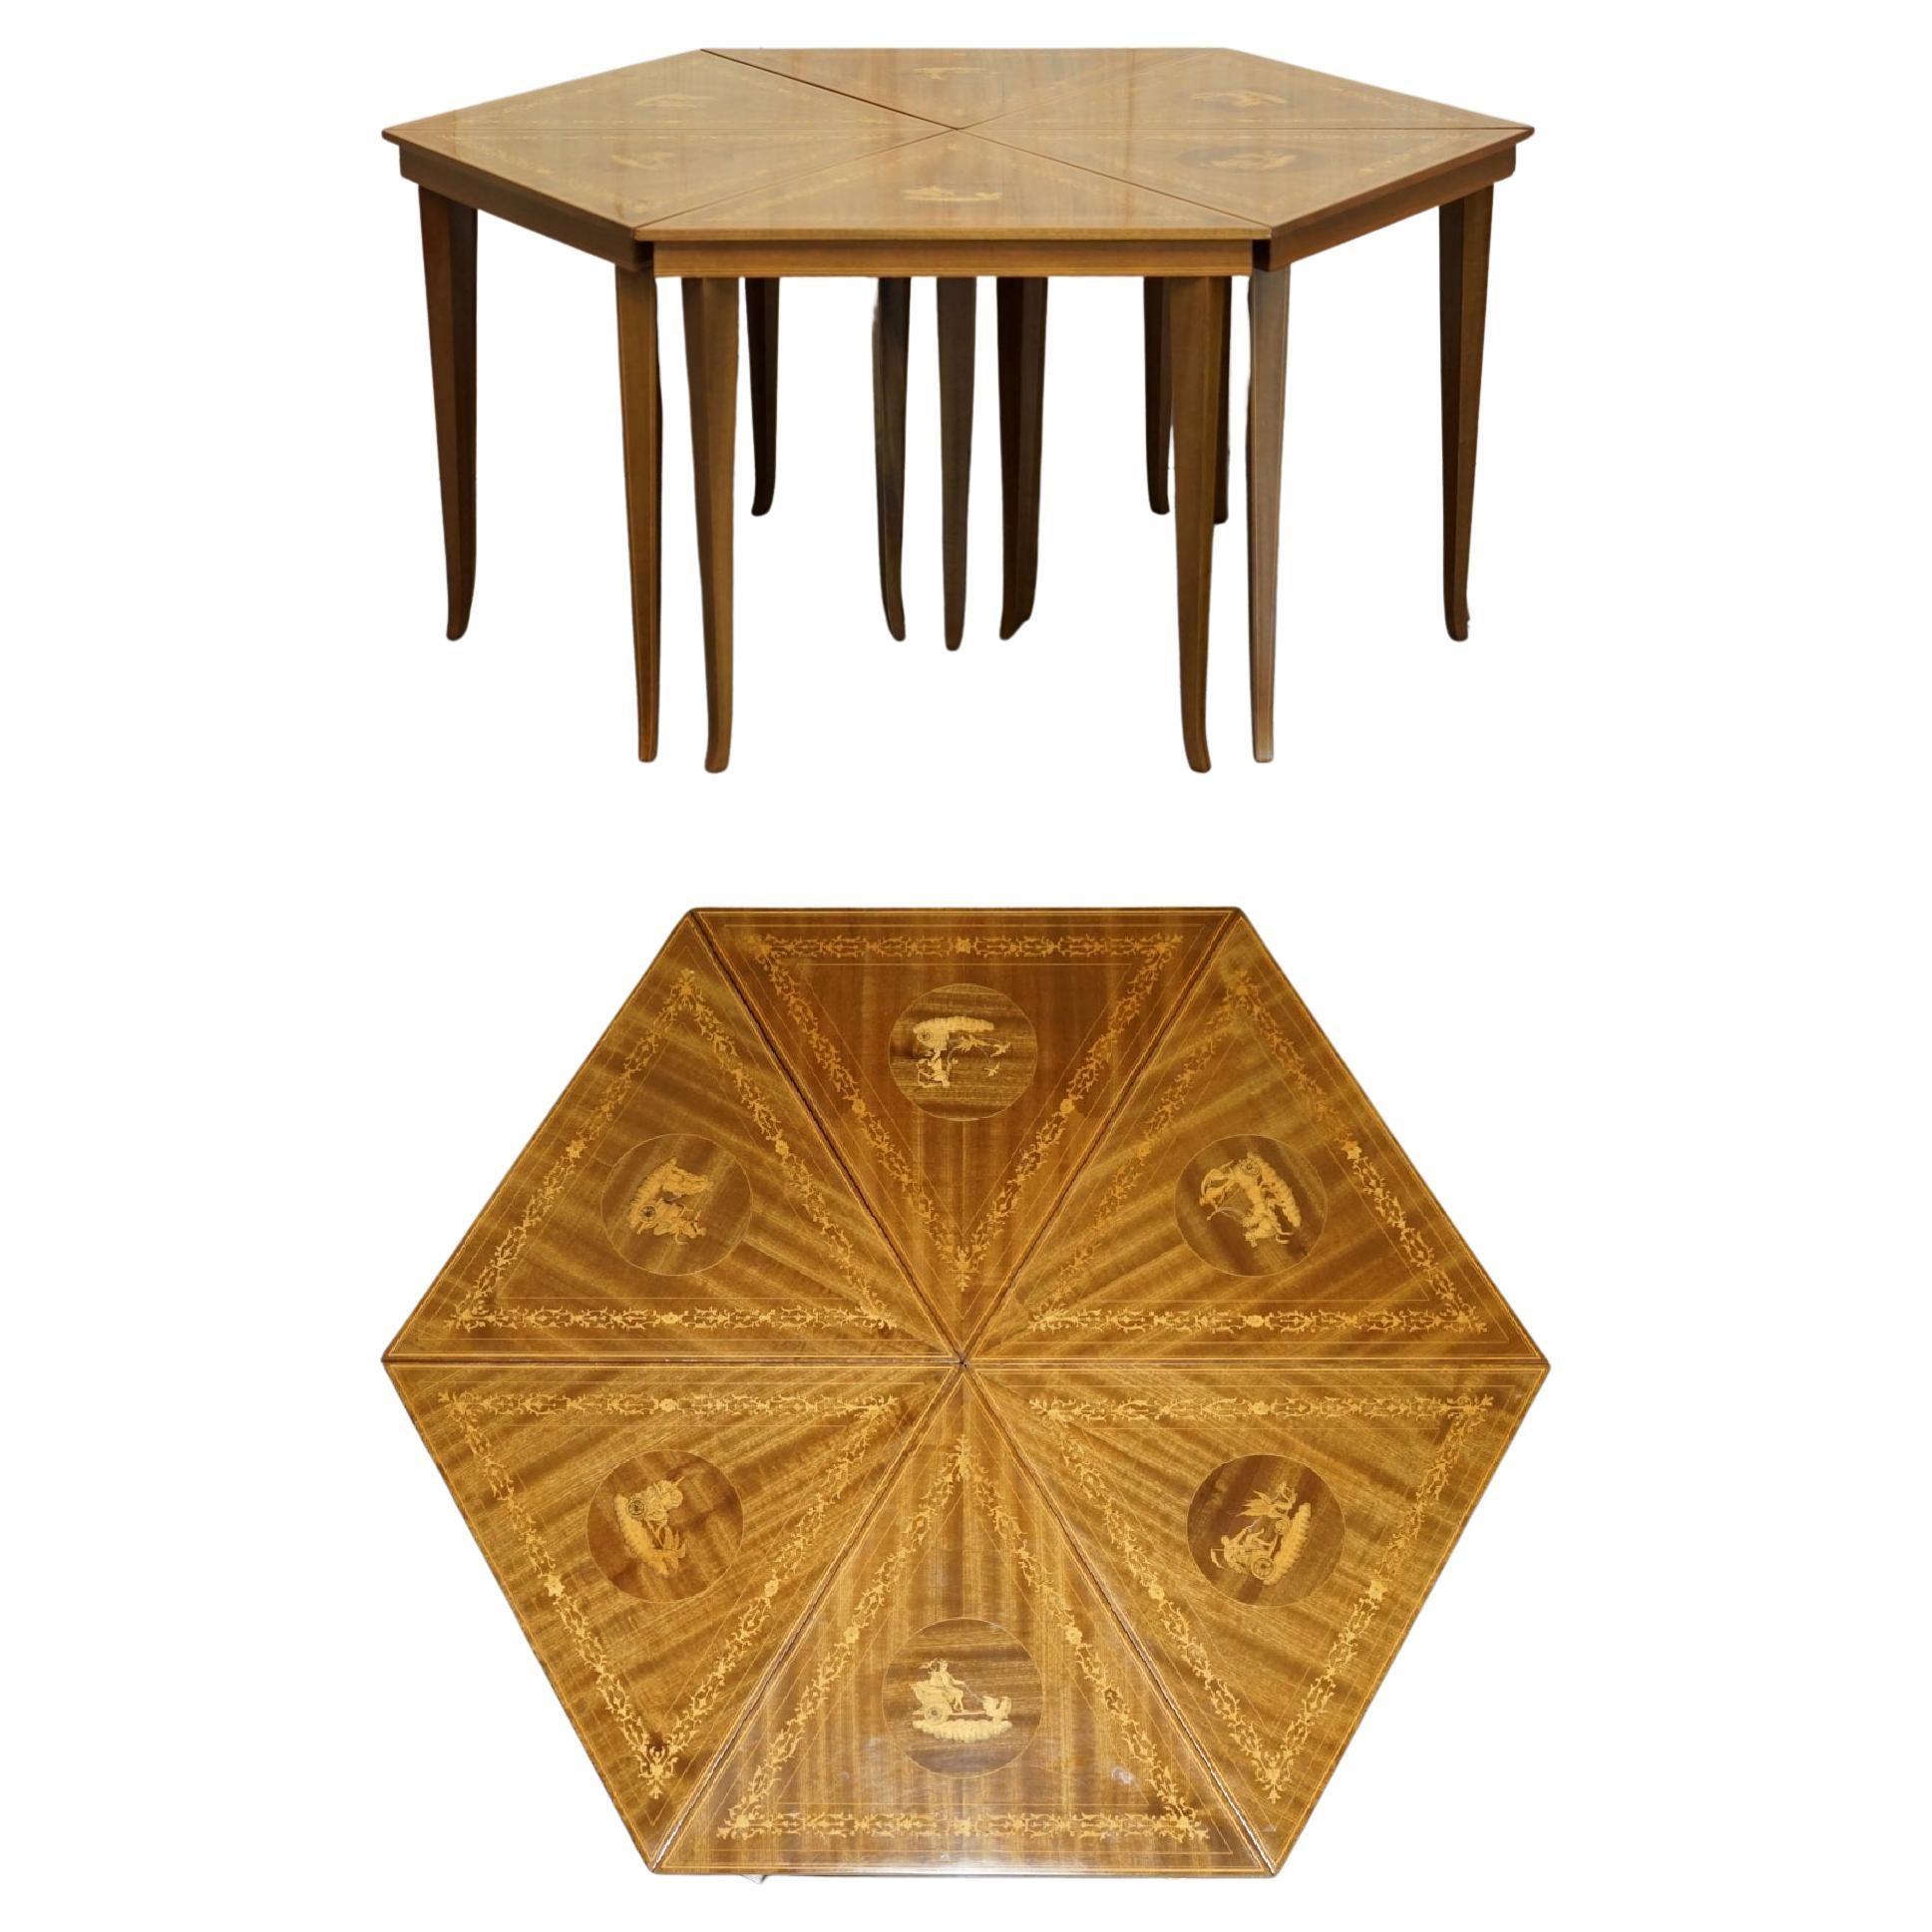 Schöne italienische Vintage-Tischgruppe mit Intarsien, ca. 1950er Jahre, sechseckig